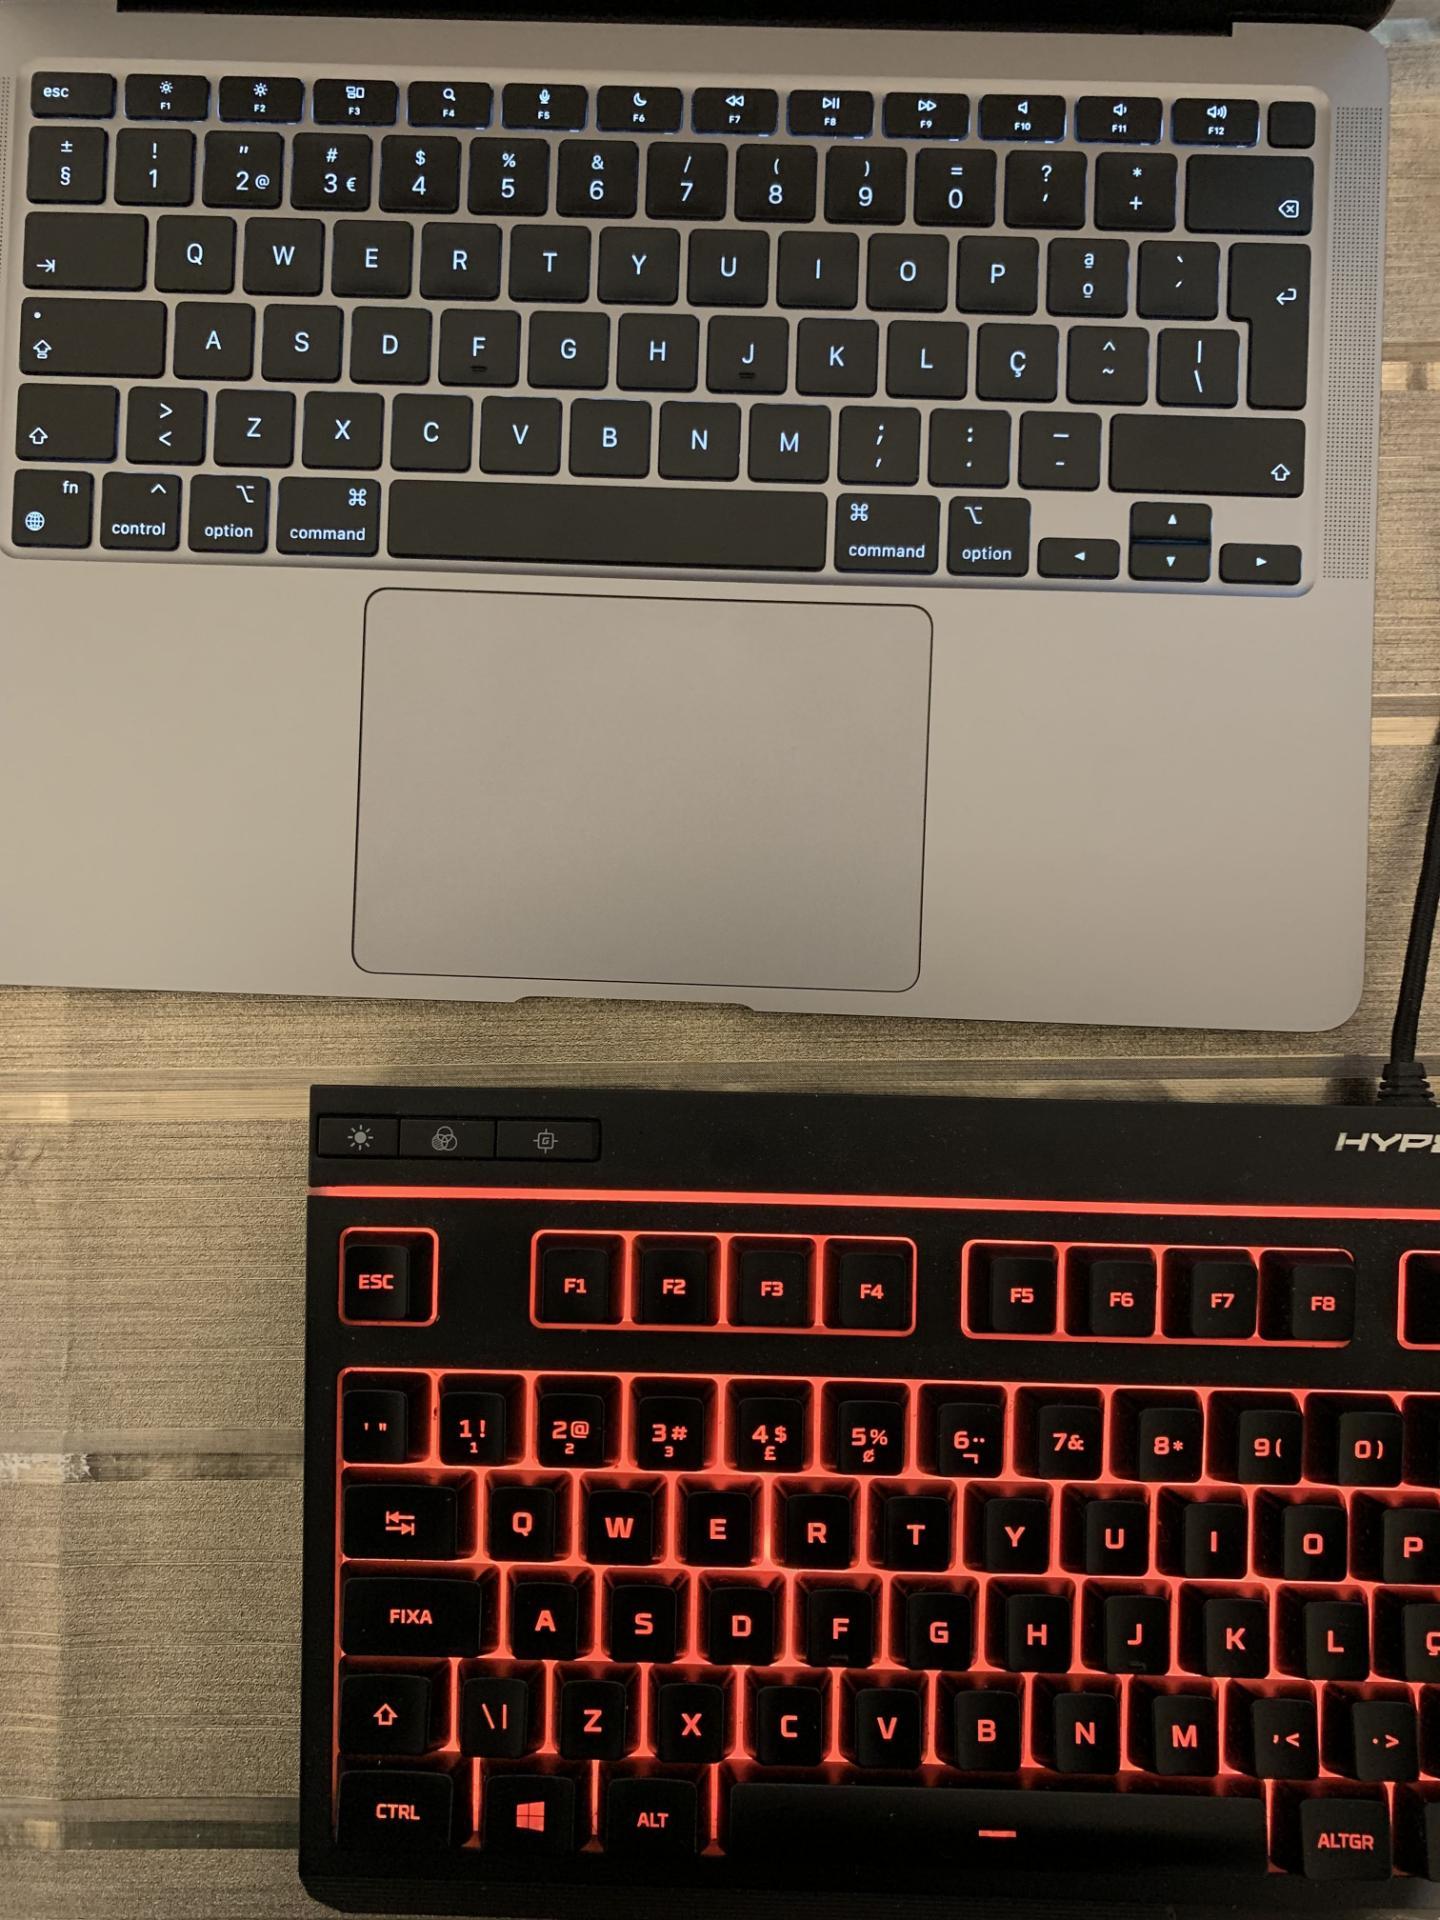 Internet descobre que o 'g' do teclado não é igual ao que aparece